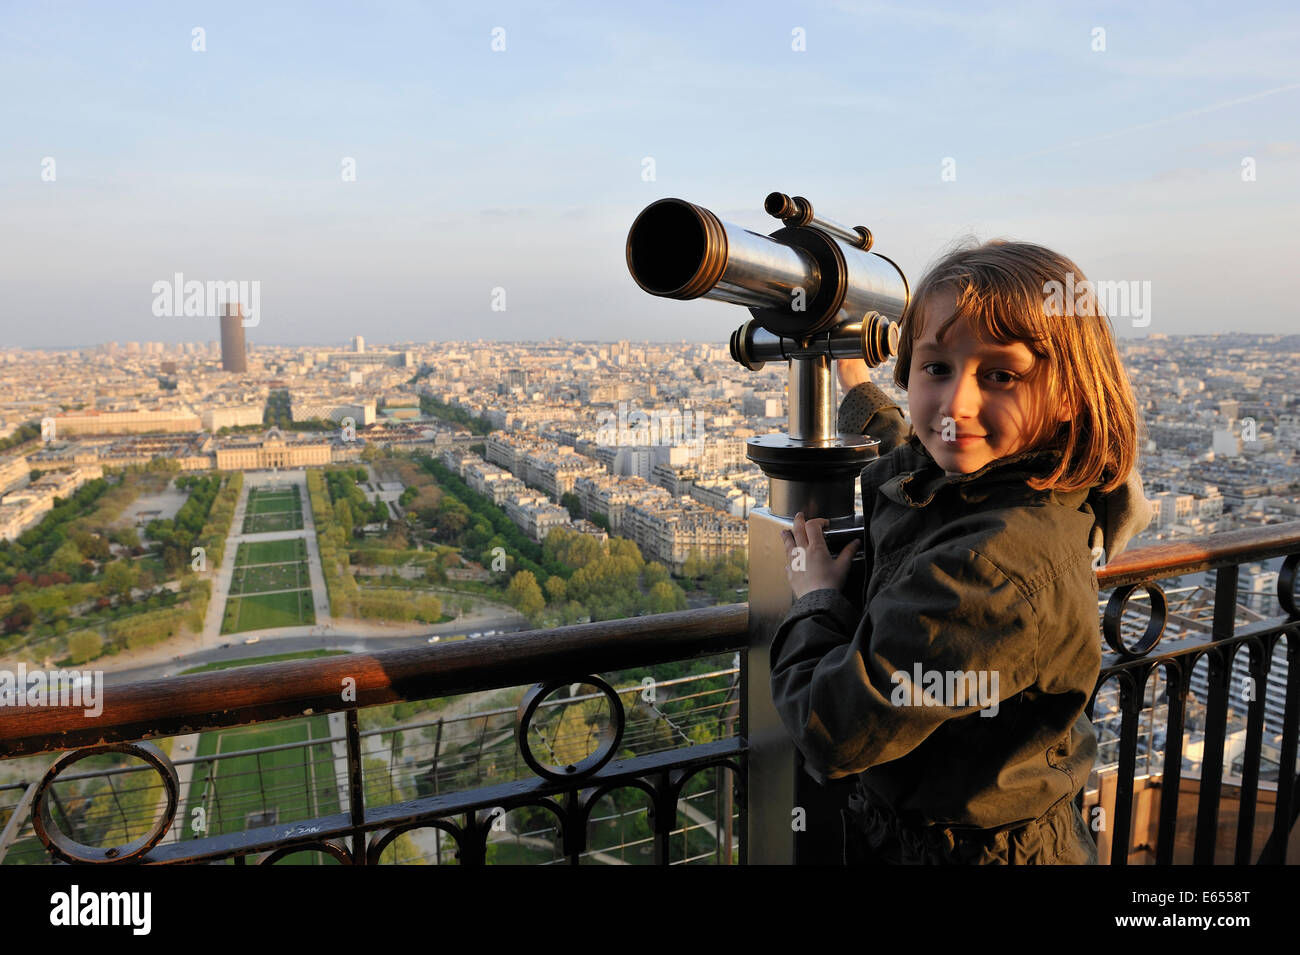 Ragazza giovane alla sommità della torre Eiffel, Parigi, Francia, Europa - con la Torre di Montparnasse e Parc du Champ de Mars in background Foto Stock